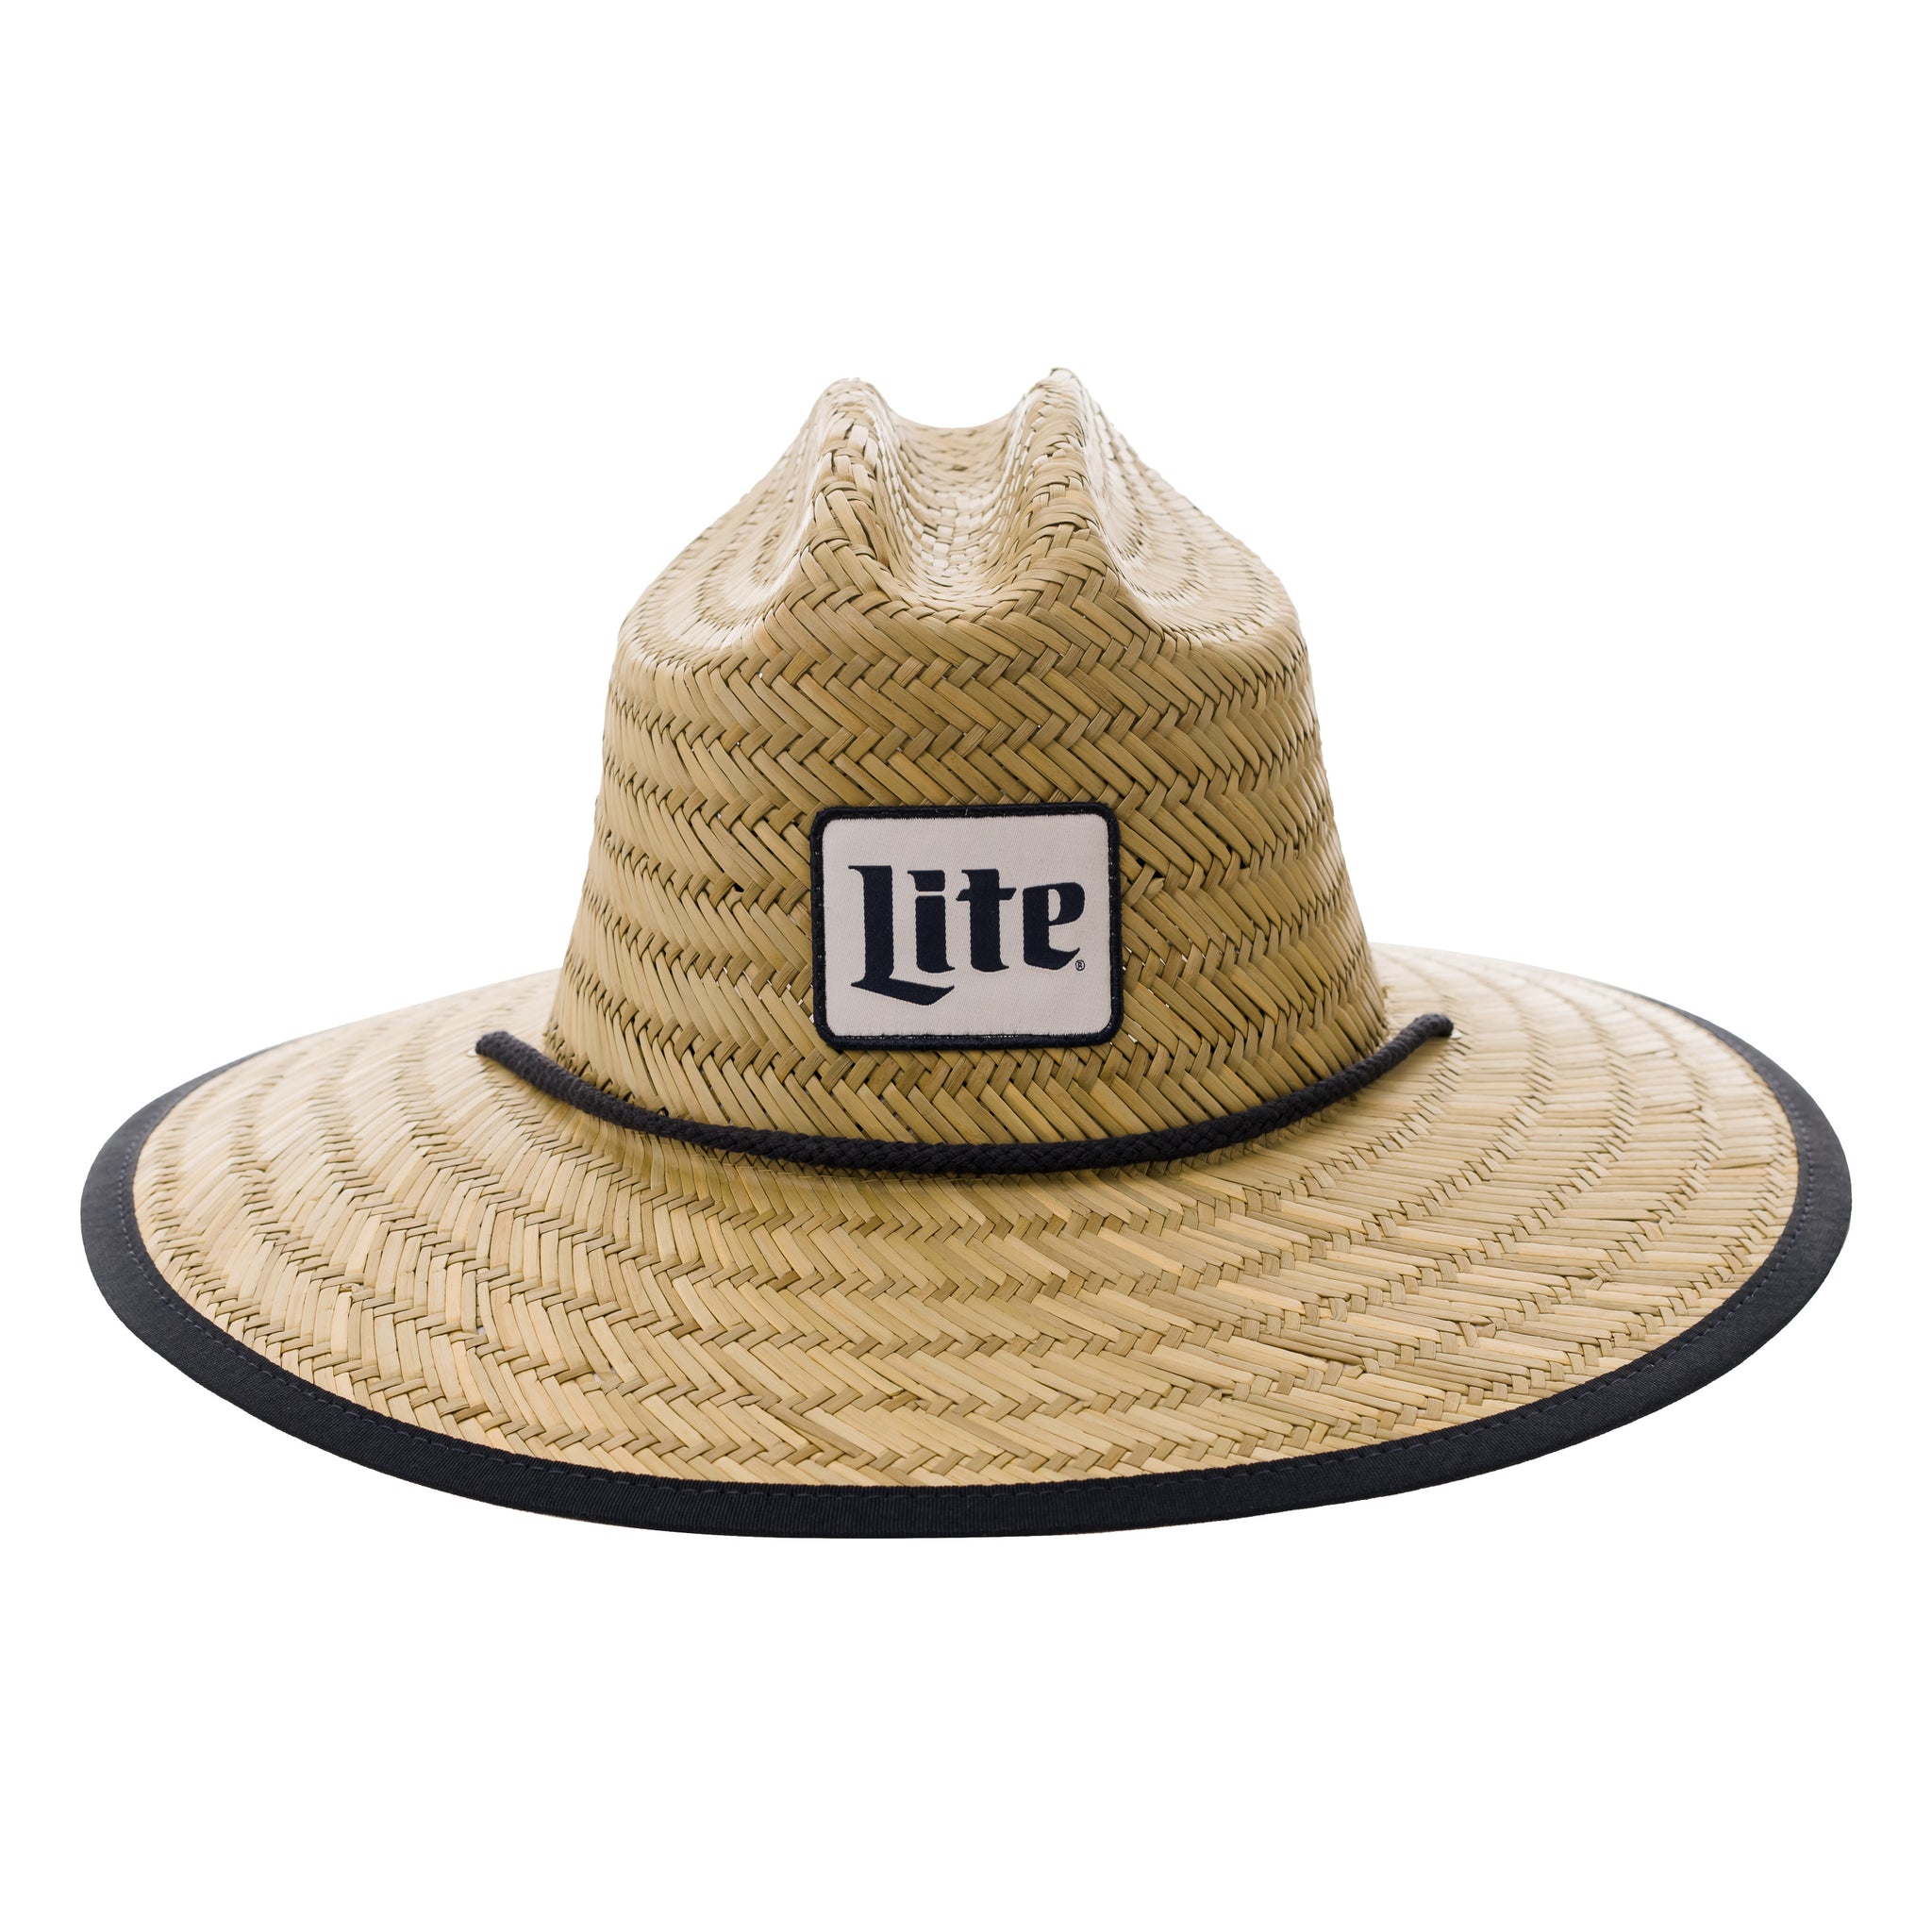 Miller Lite Beer Box Cowboy Hats